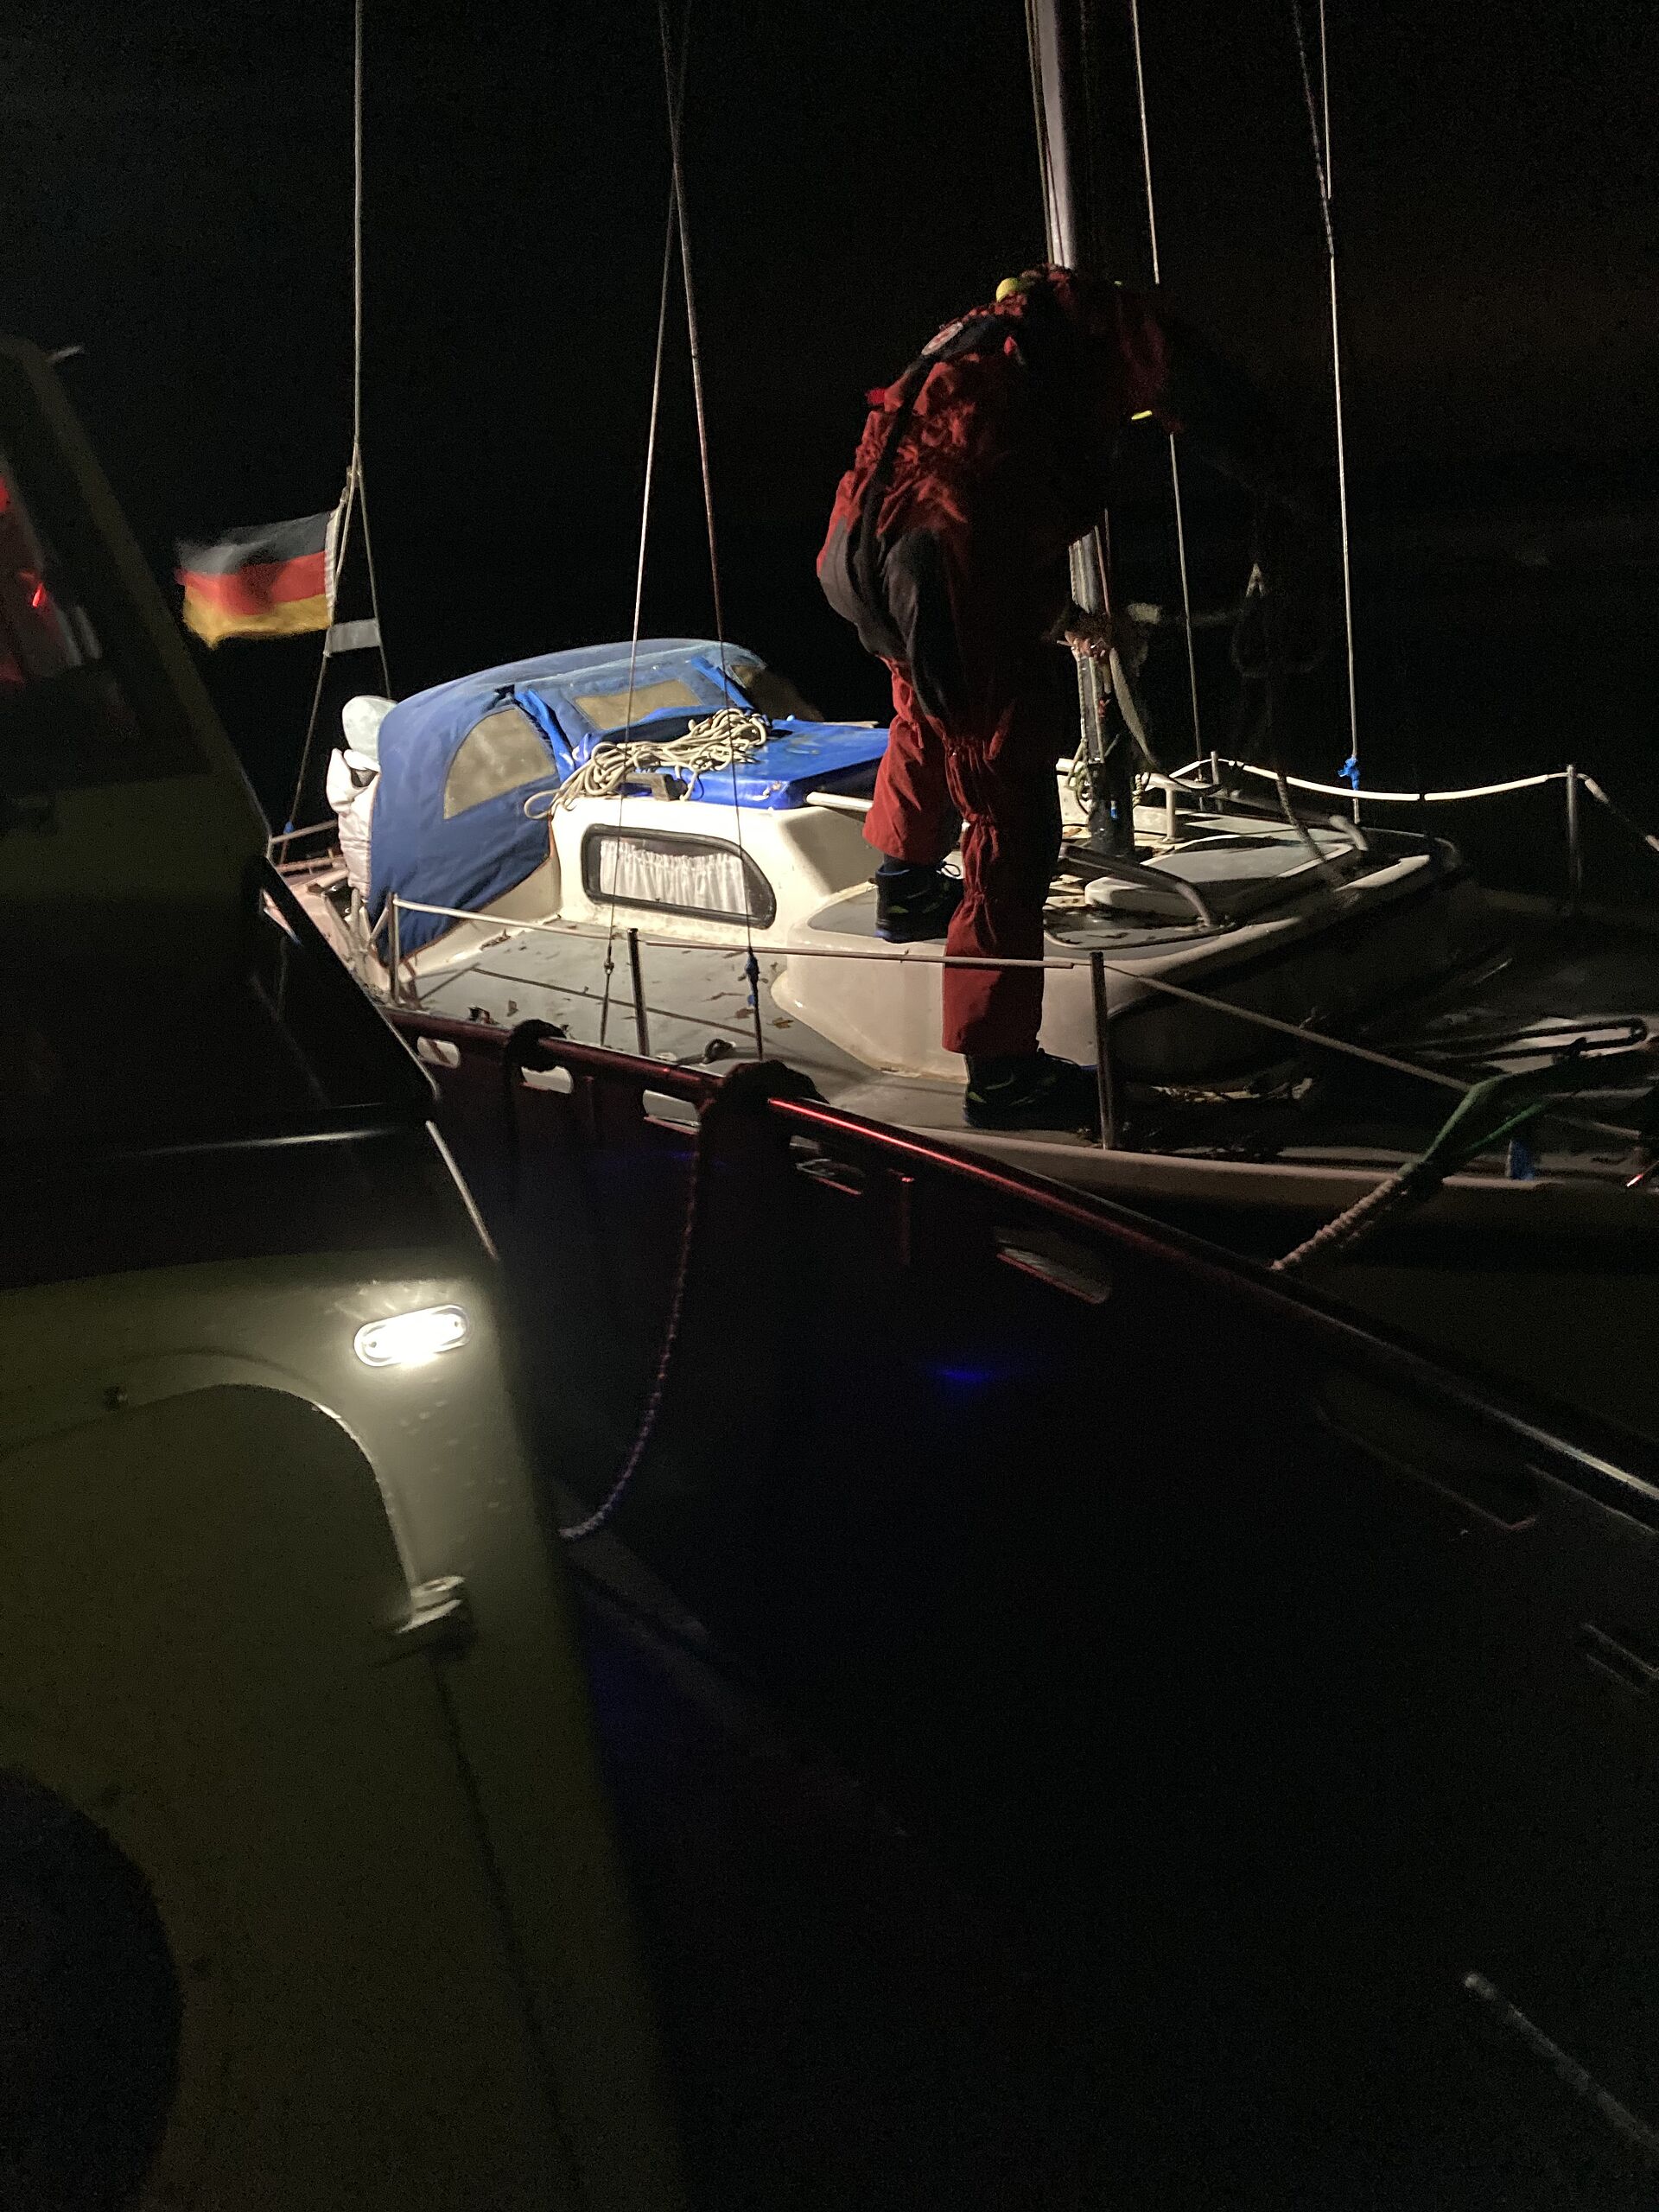 Seenotretter hilft verletzten Segler nach Motorschaden bei Nacht